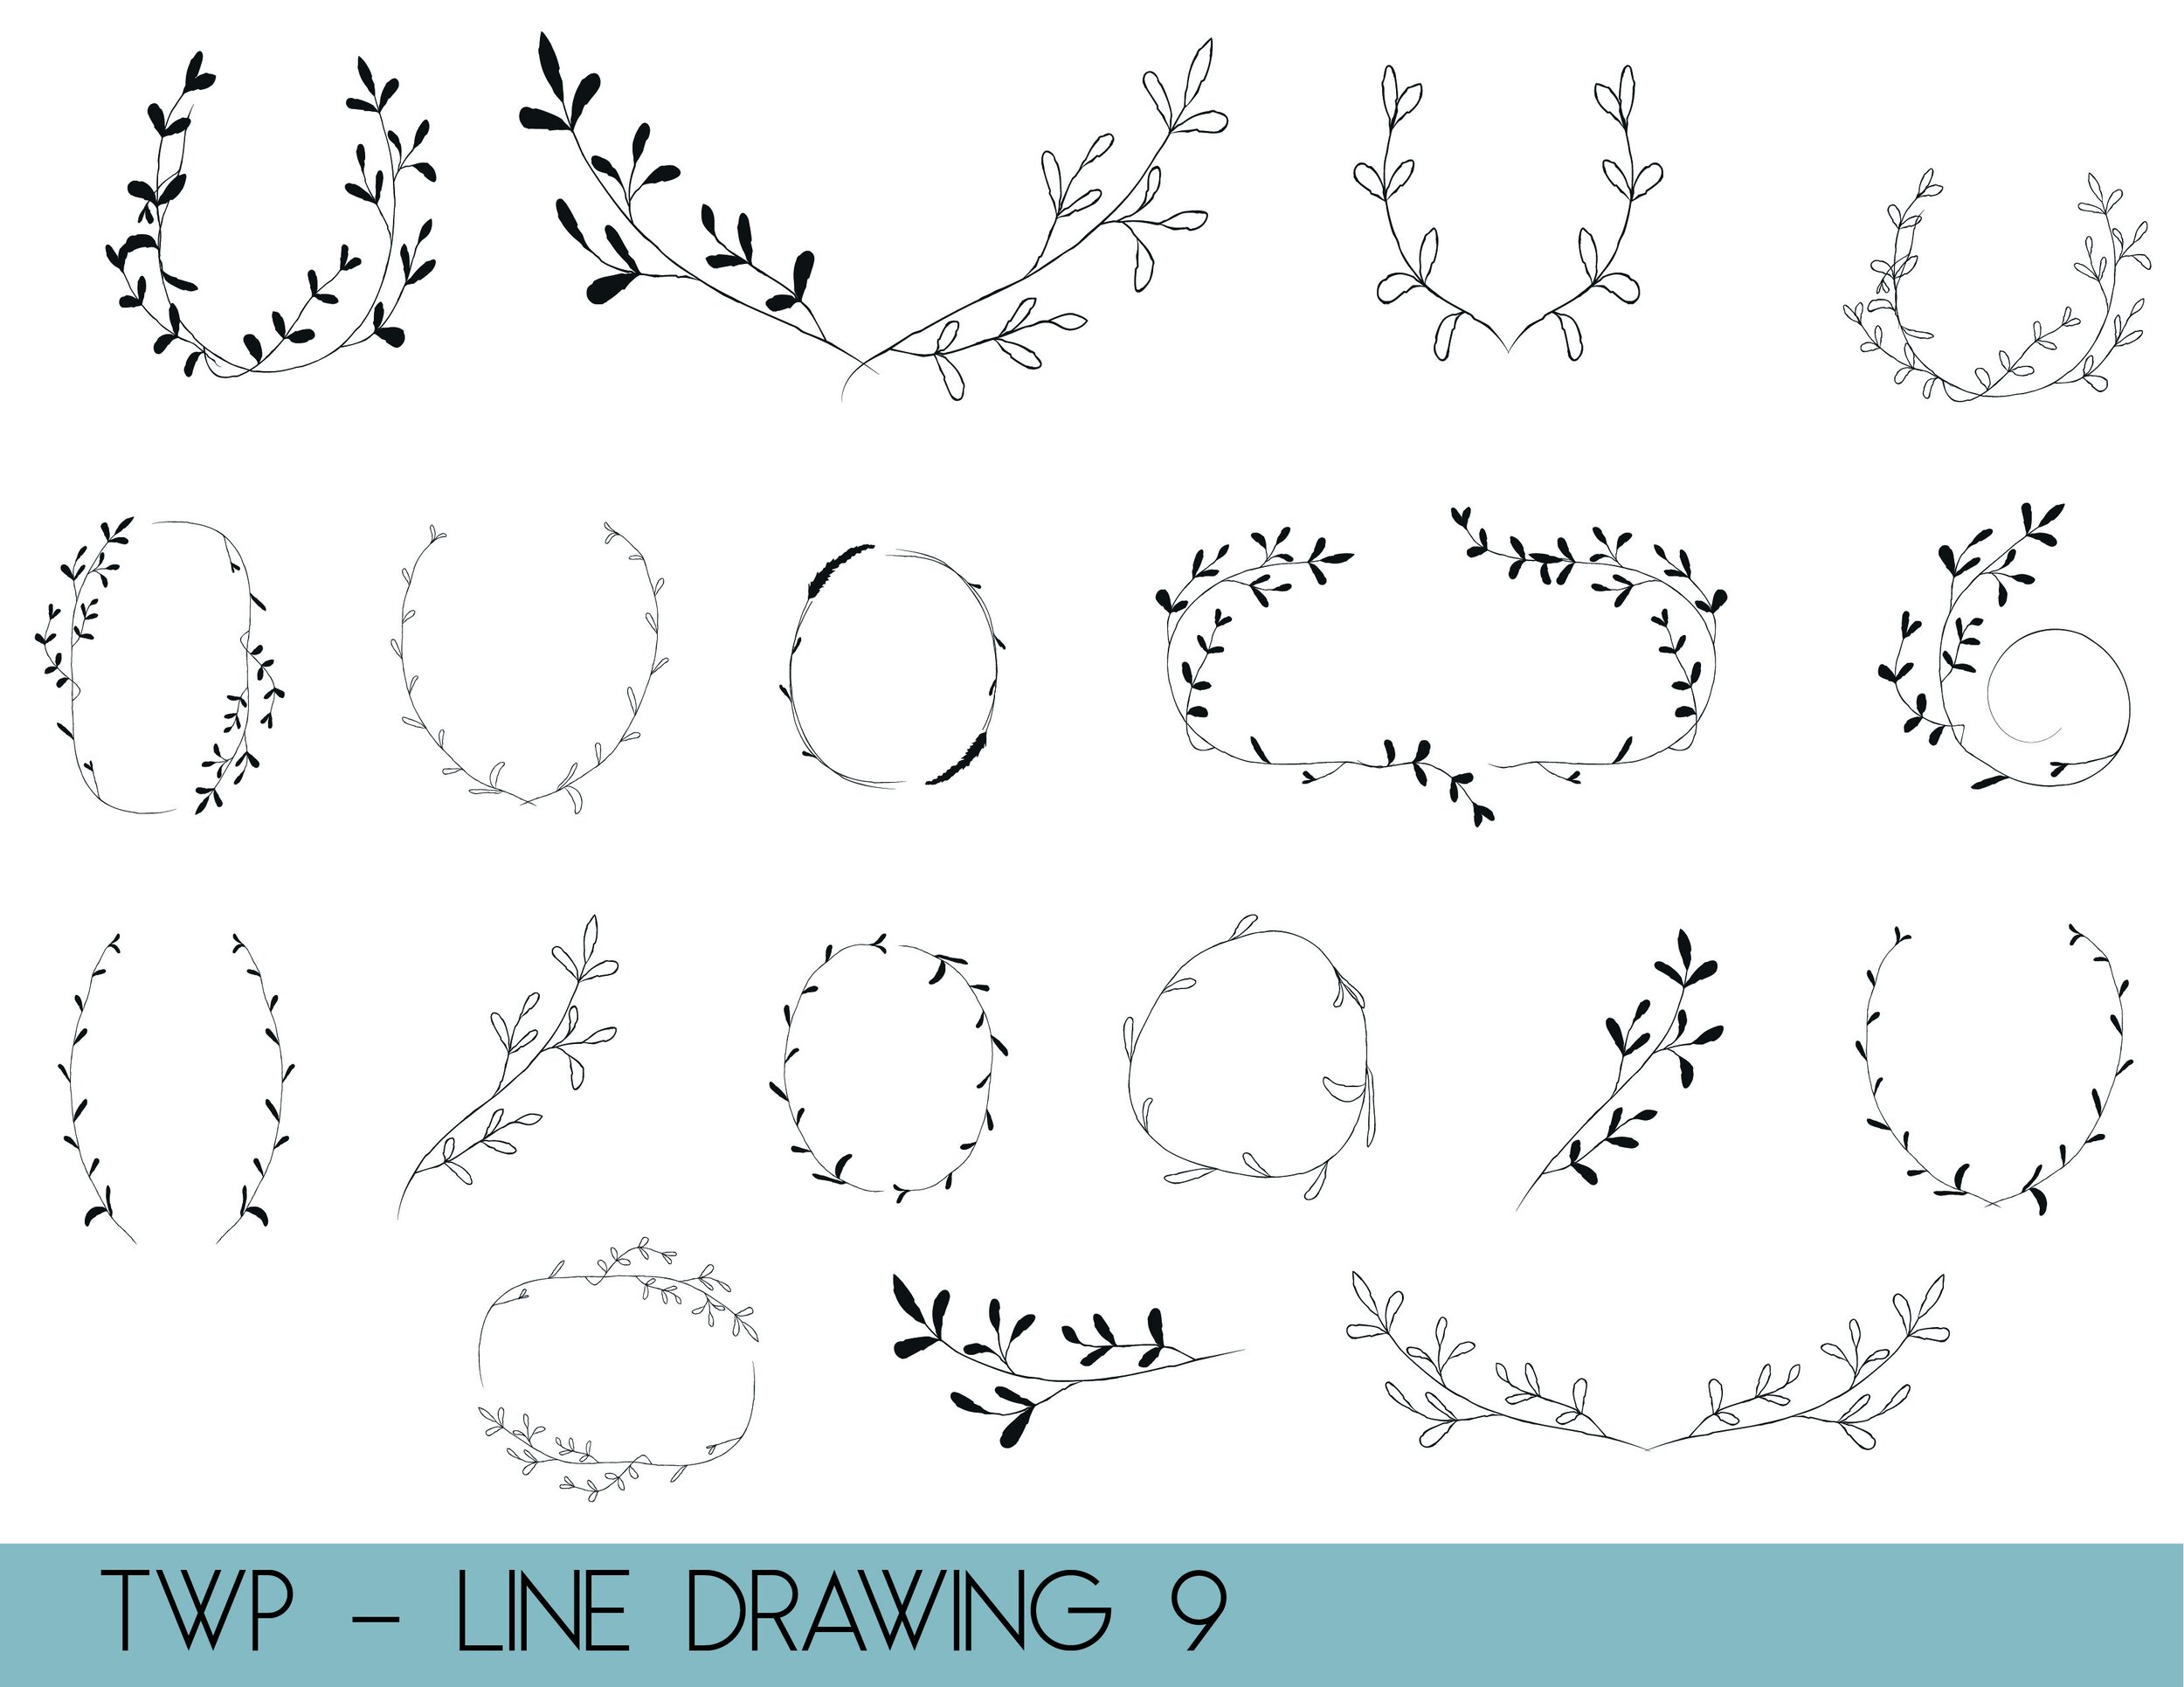 line drawings - website9.jpg